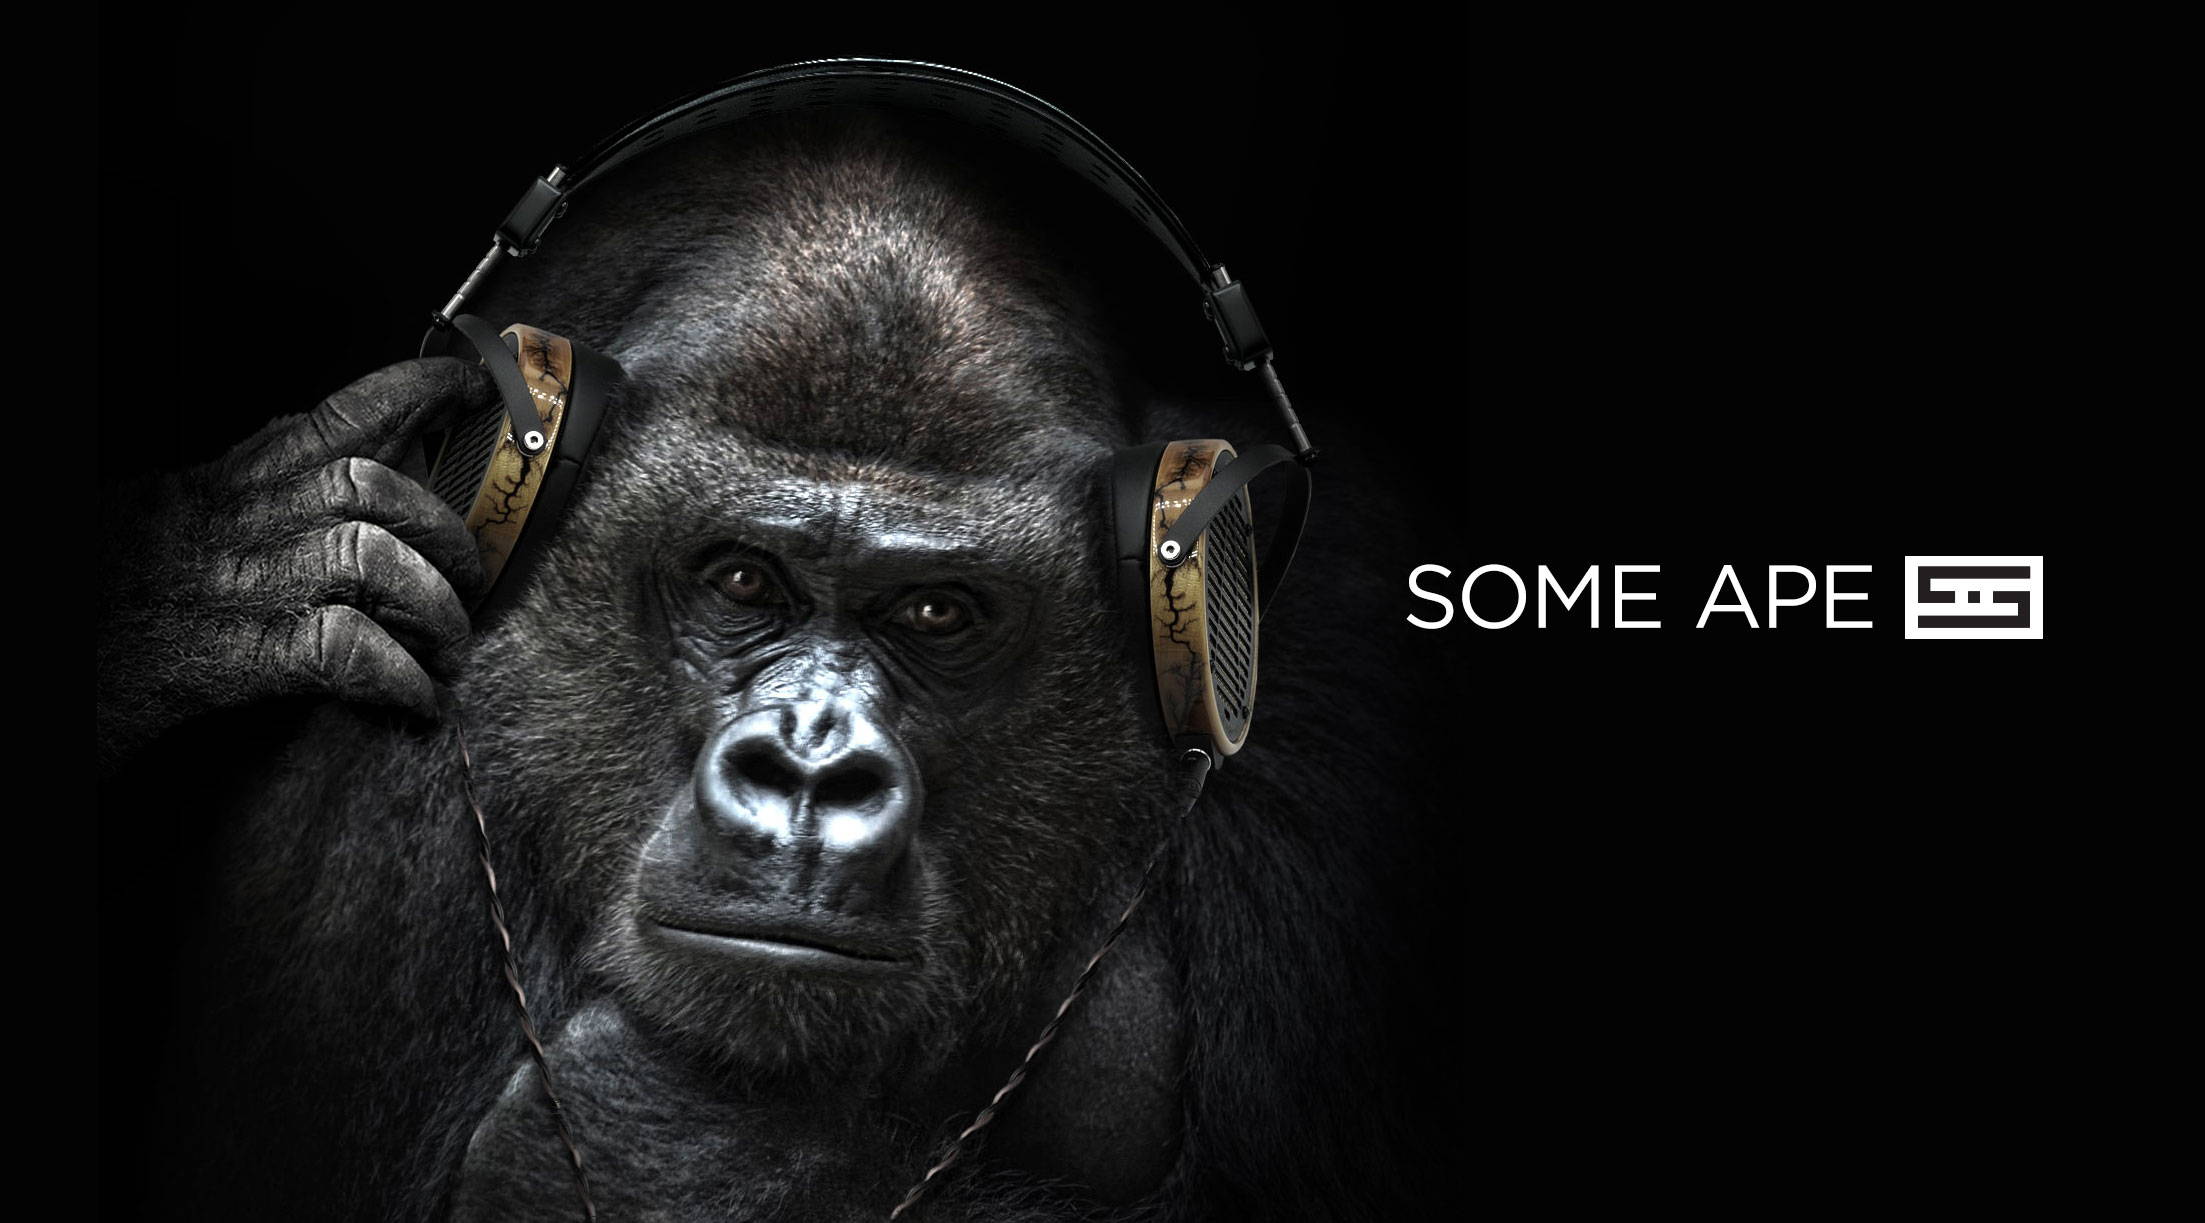 Gorilla wearing LCD-R headphones with Schiit logo